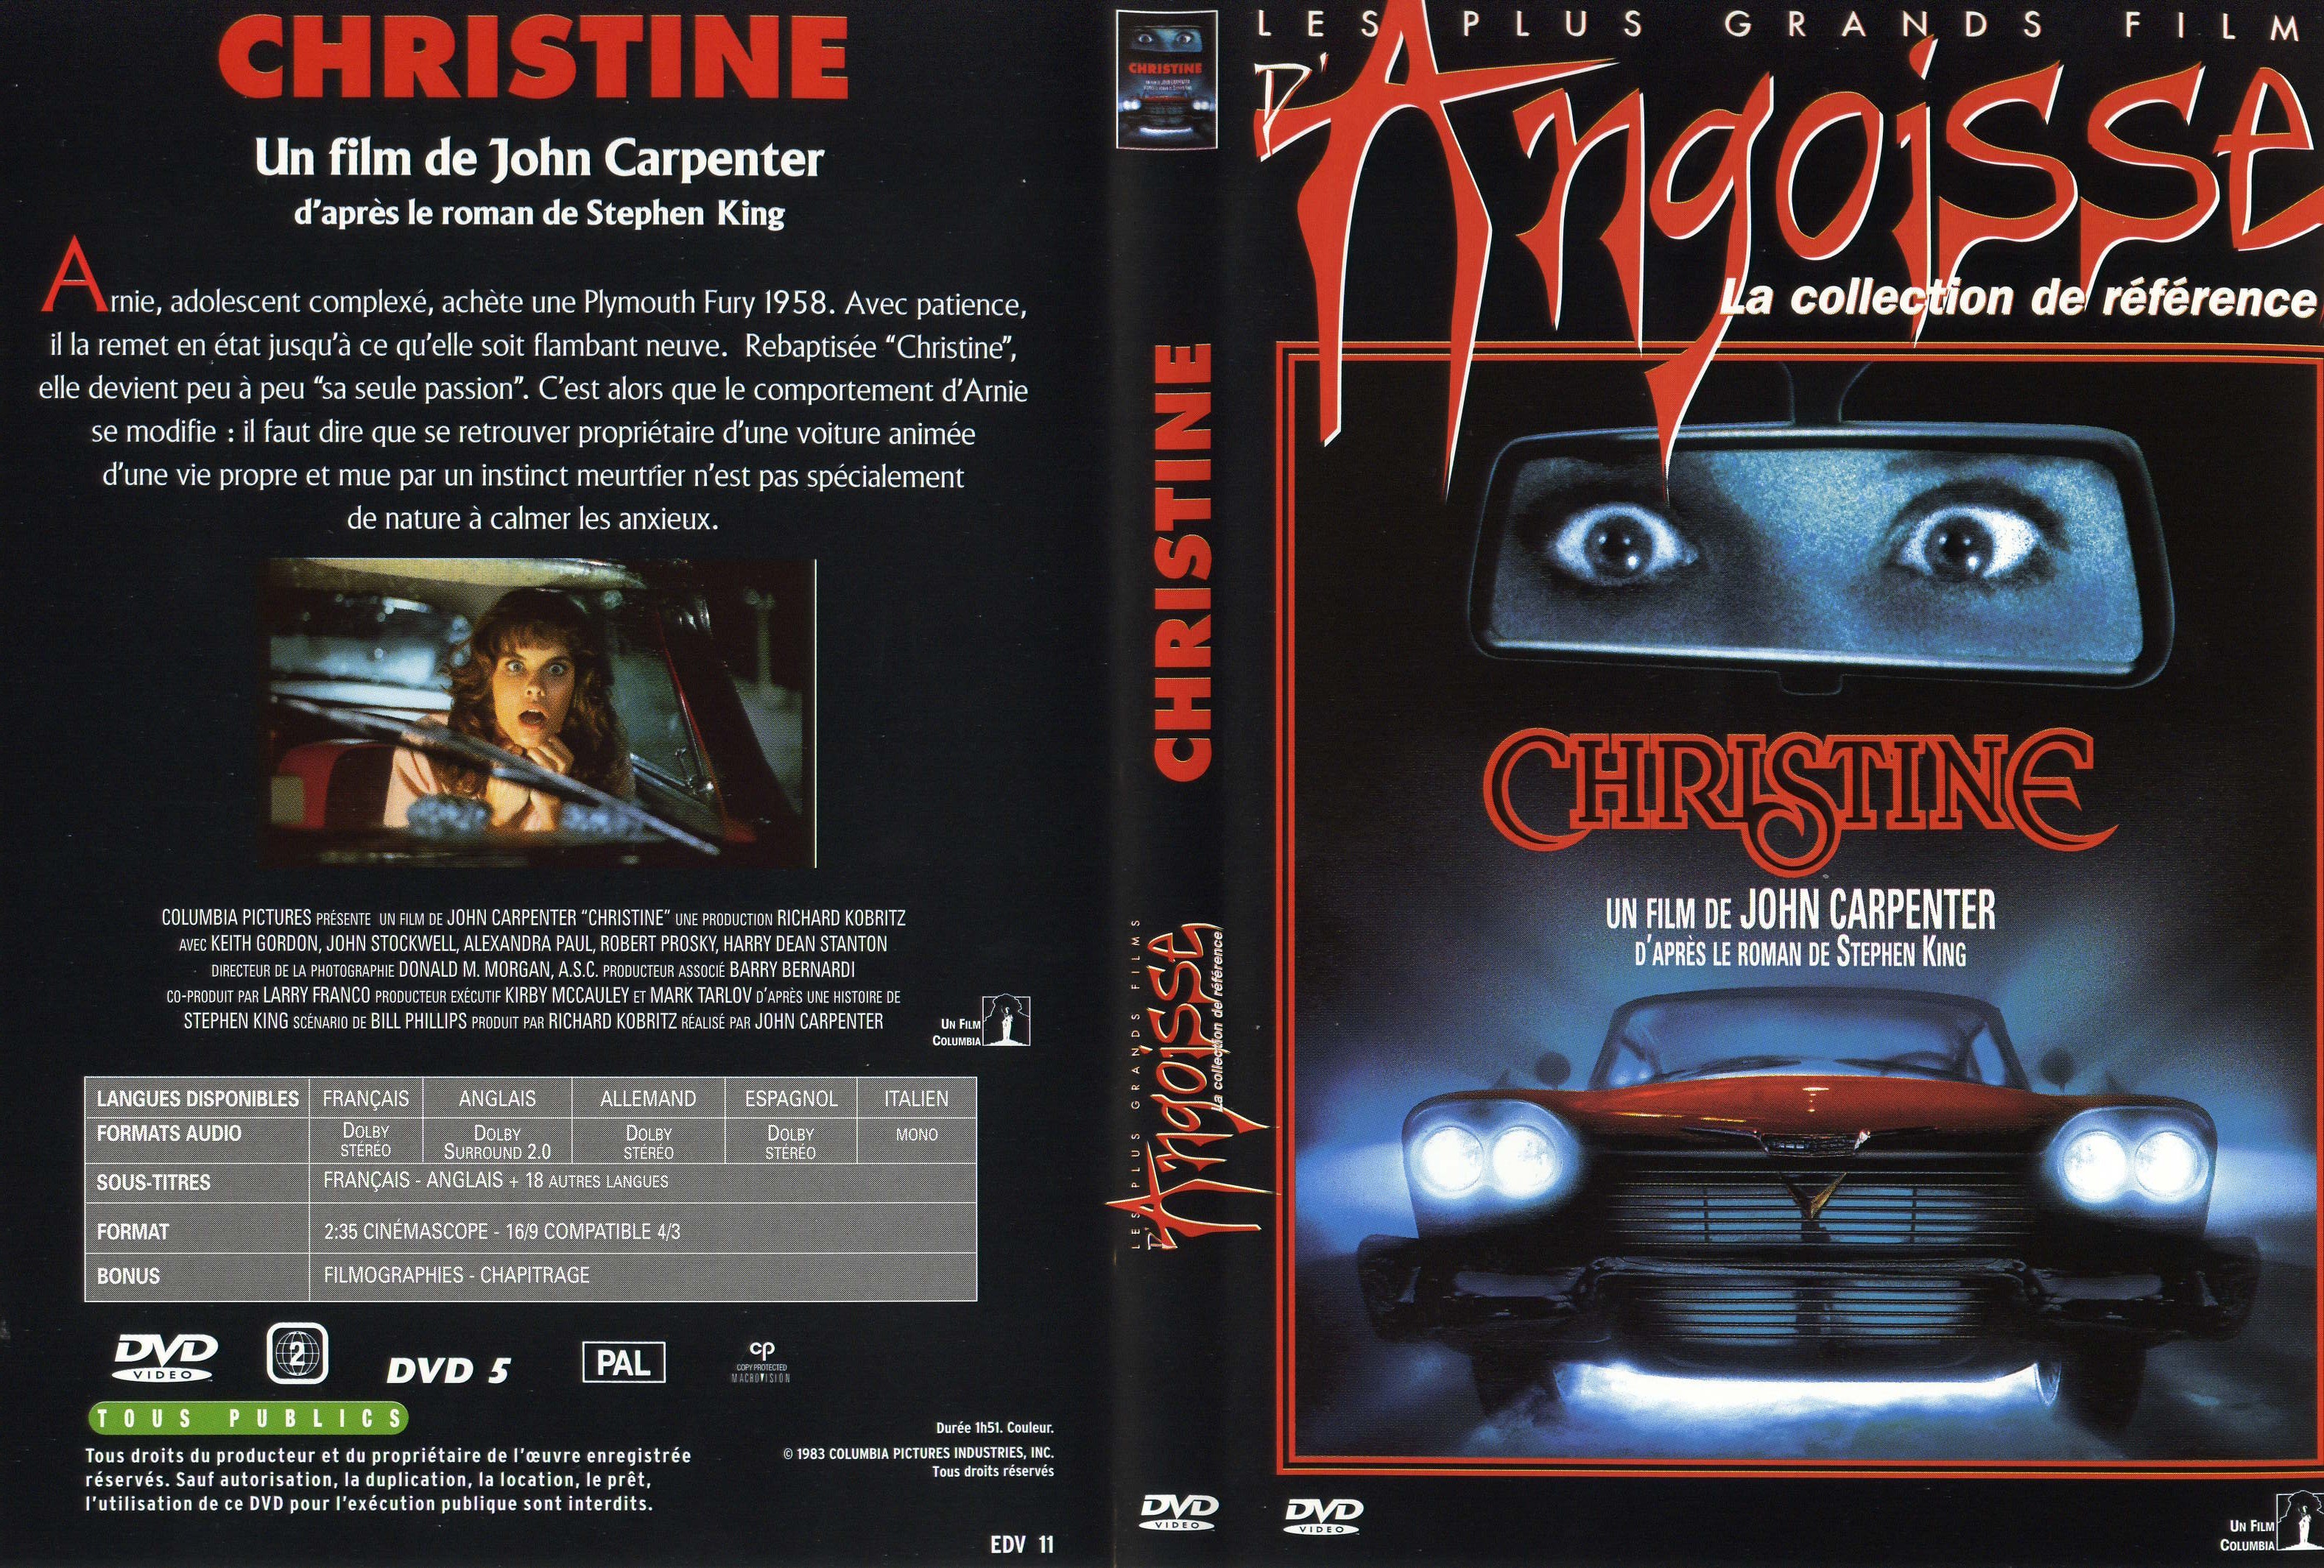 Jaquette DVD Christine v3